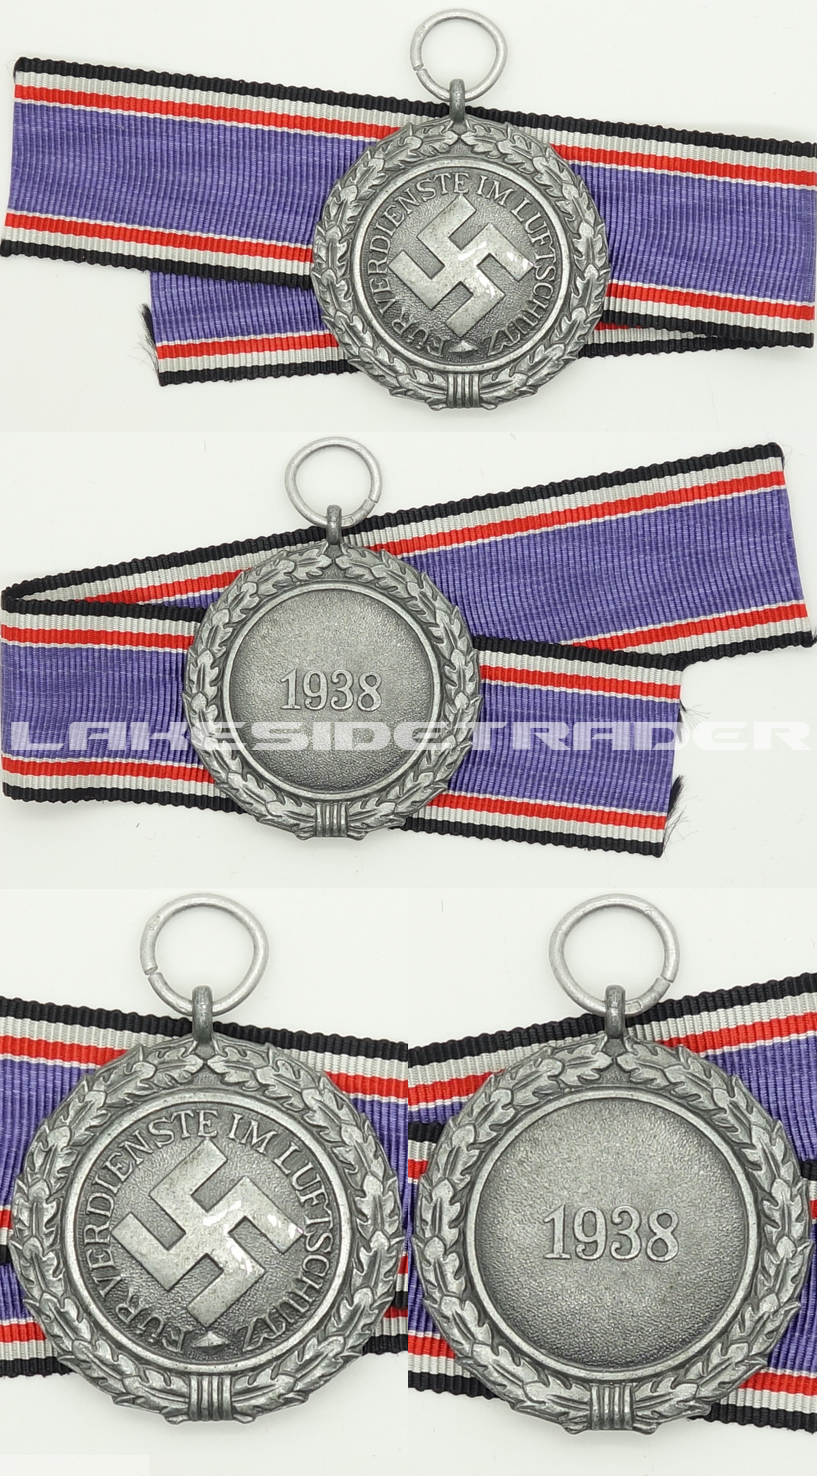 2nd Class Luftschutz Medal by 10